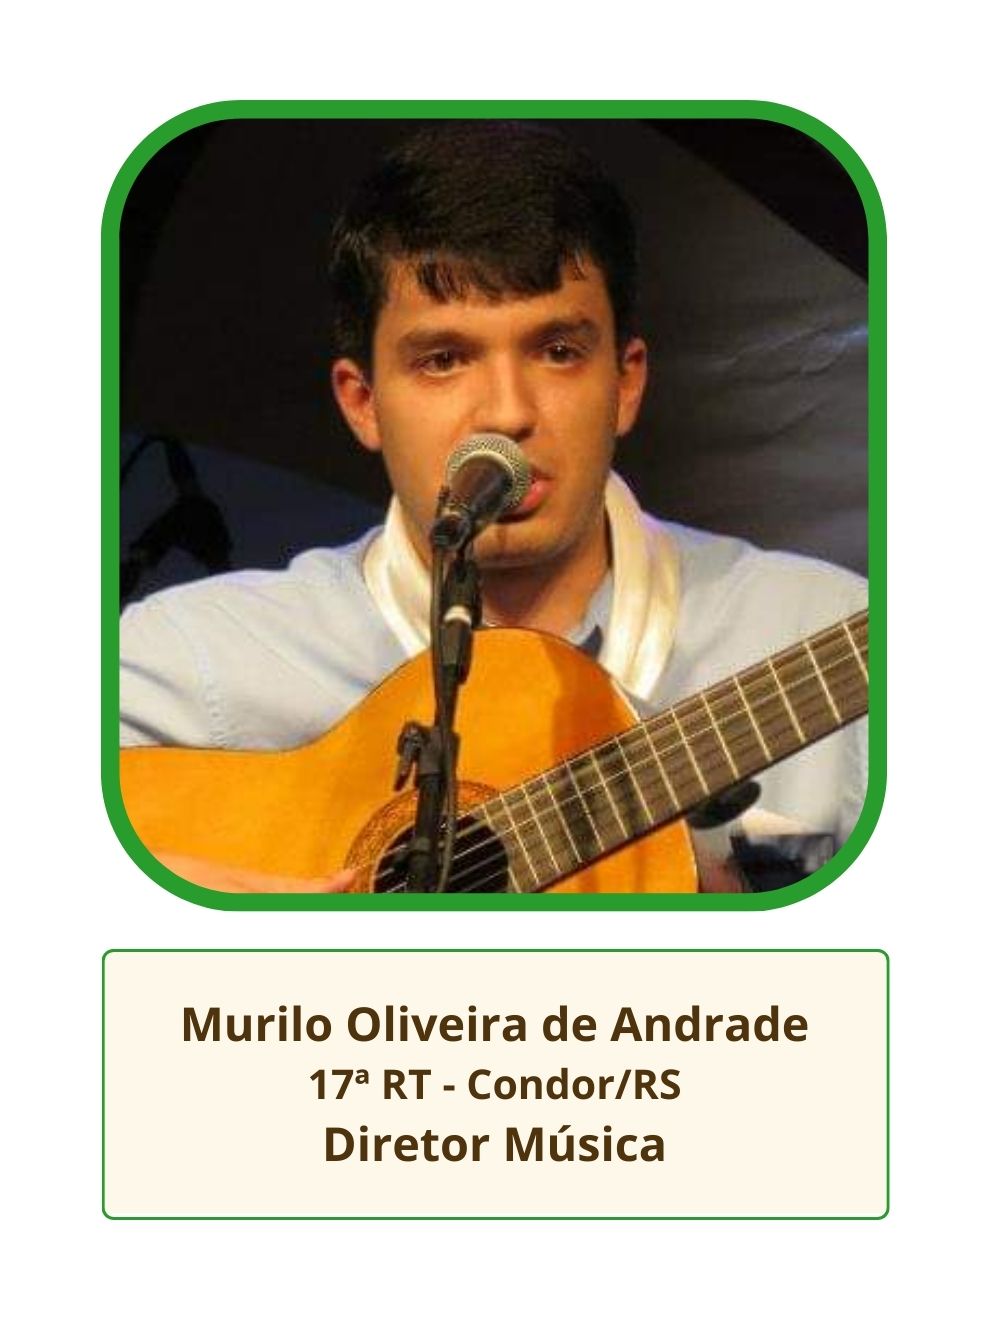 Murilo Oliveira de Andrade